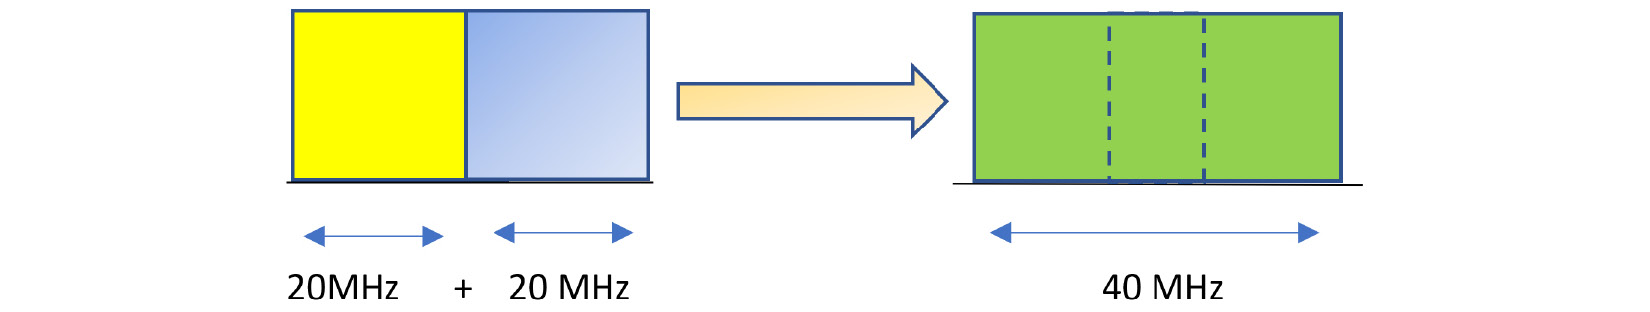 Figure 11.2 – Channel bonding
